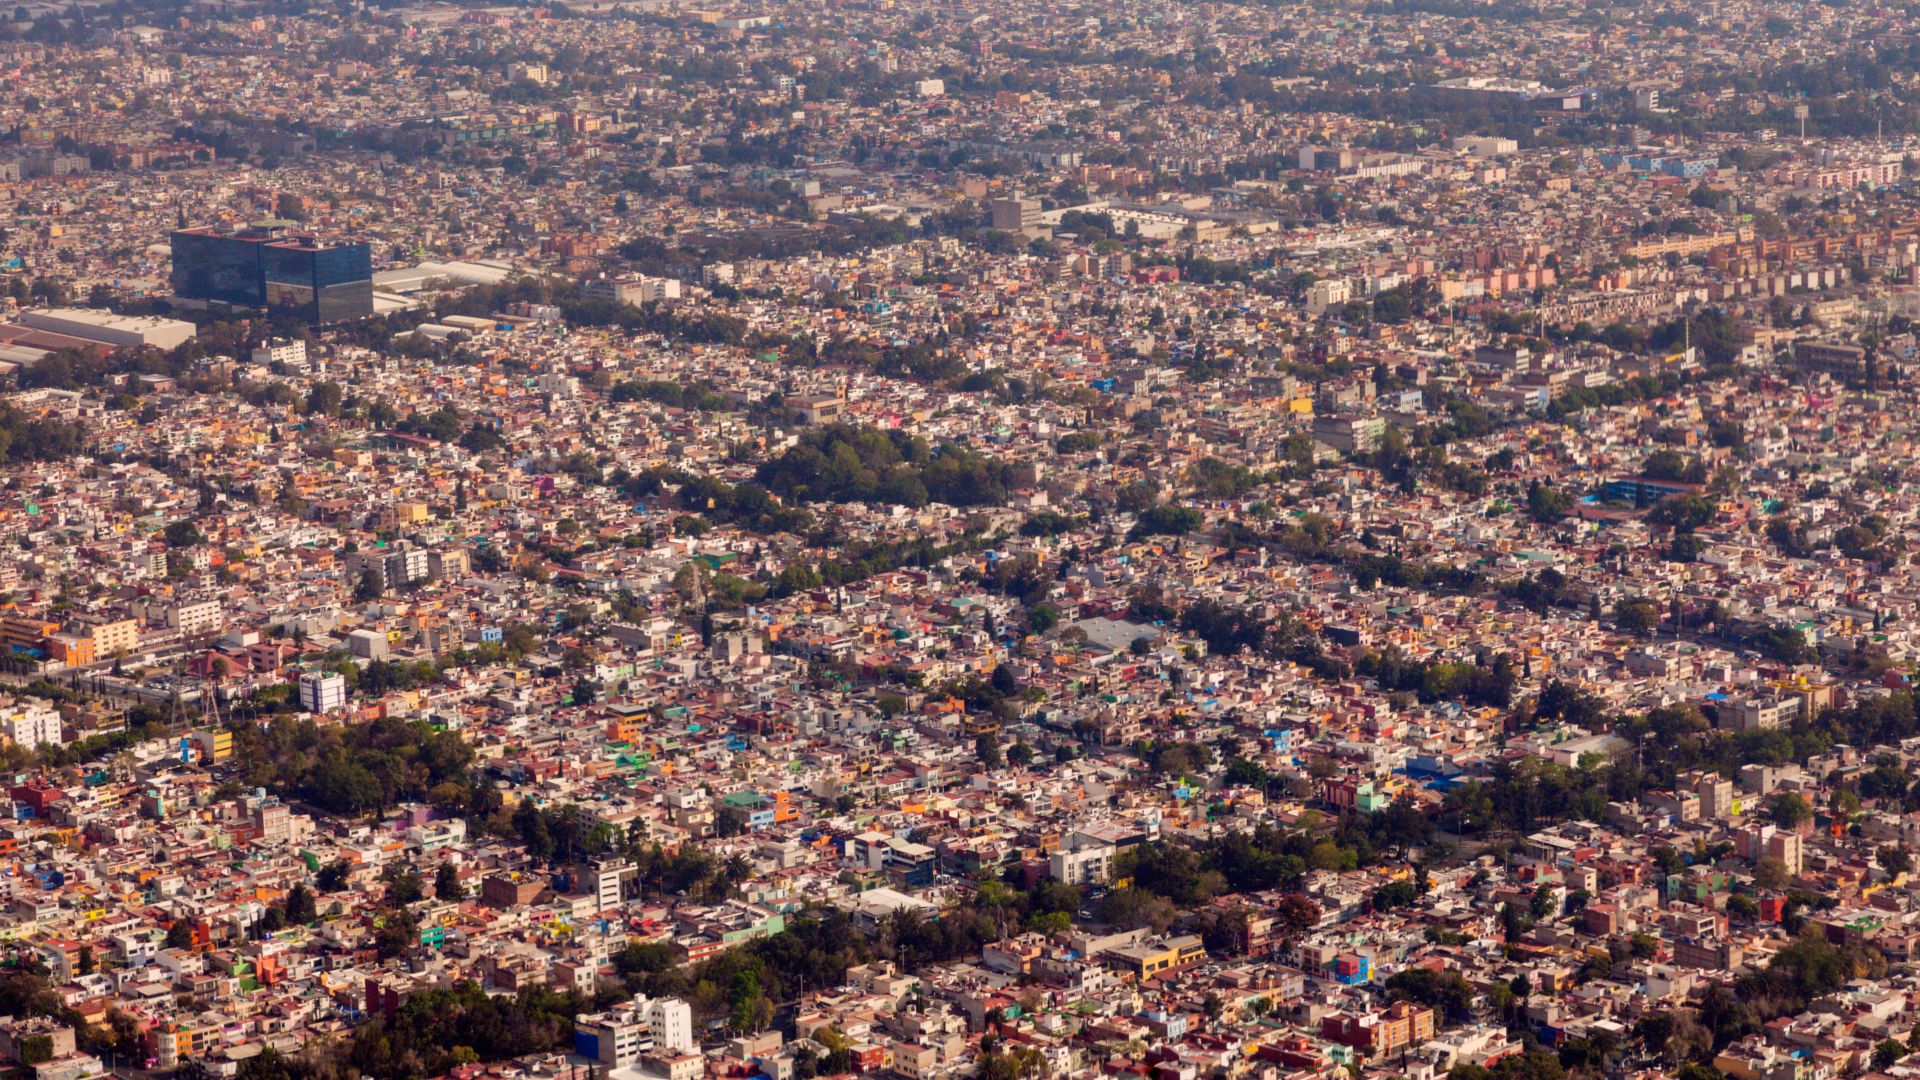 Aerial view of Mexico City. Mexico City, Mexico.